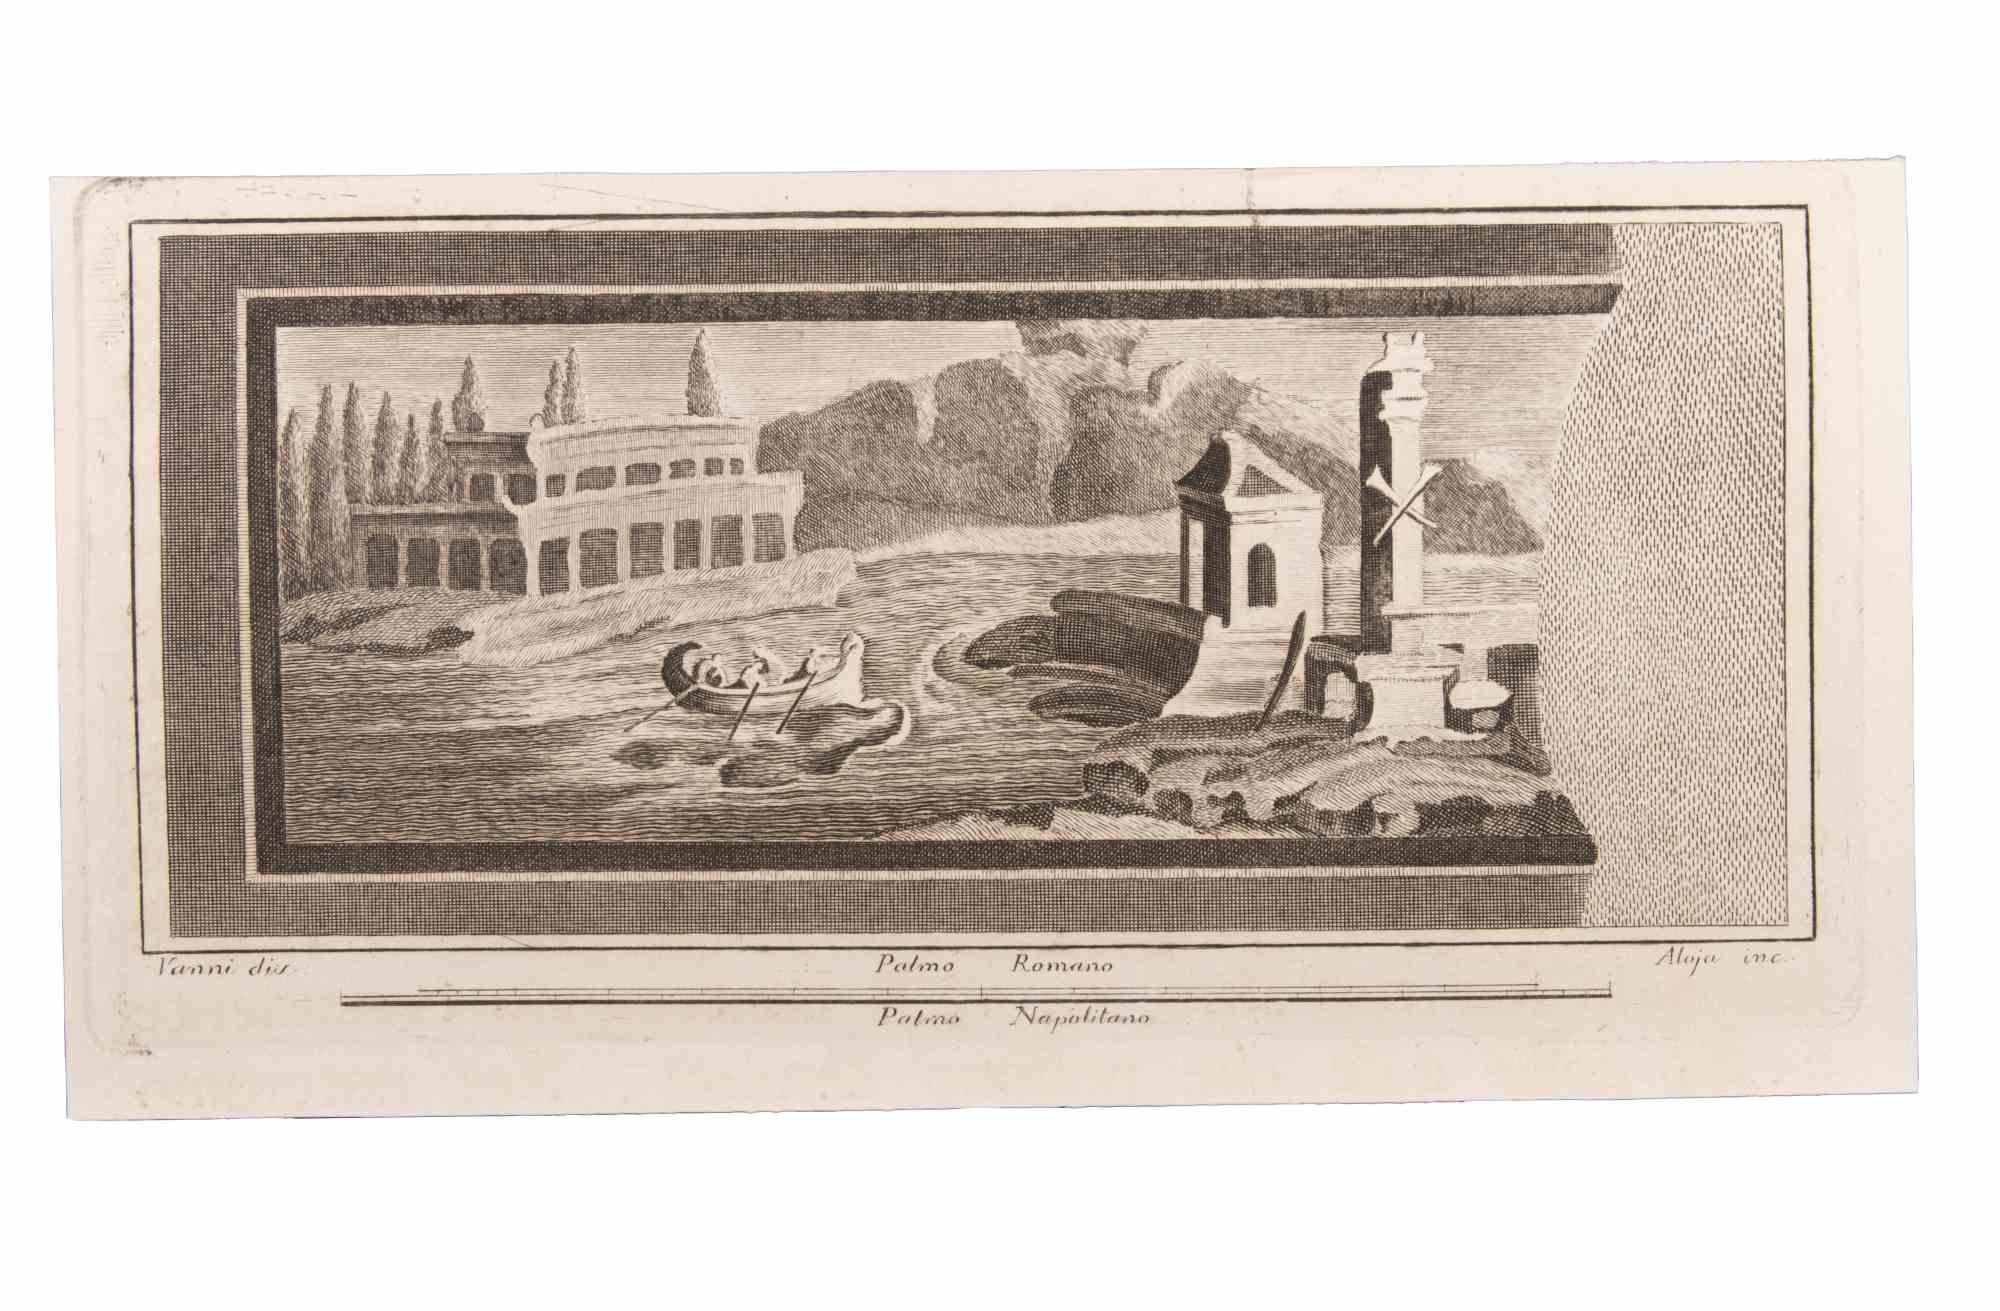 Seascape With Monument and Figures est une eau-forte réalisée par Luigi Aloja (1783-1837).

La gravure appartient à la suite d'estampes "Antiquités d'Herculanum exposées" (titre original : "Le Antichità di Ercolano Esposte"), un volume de huit